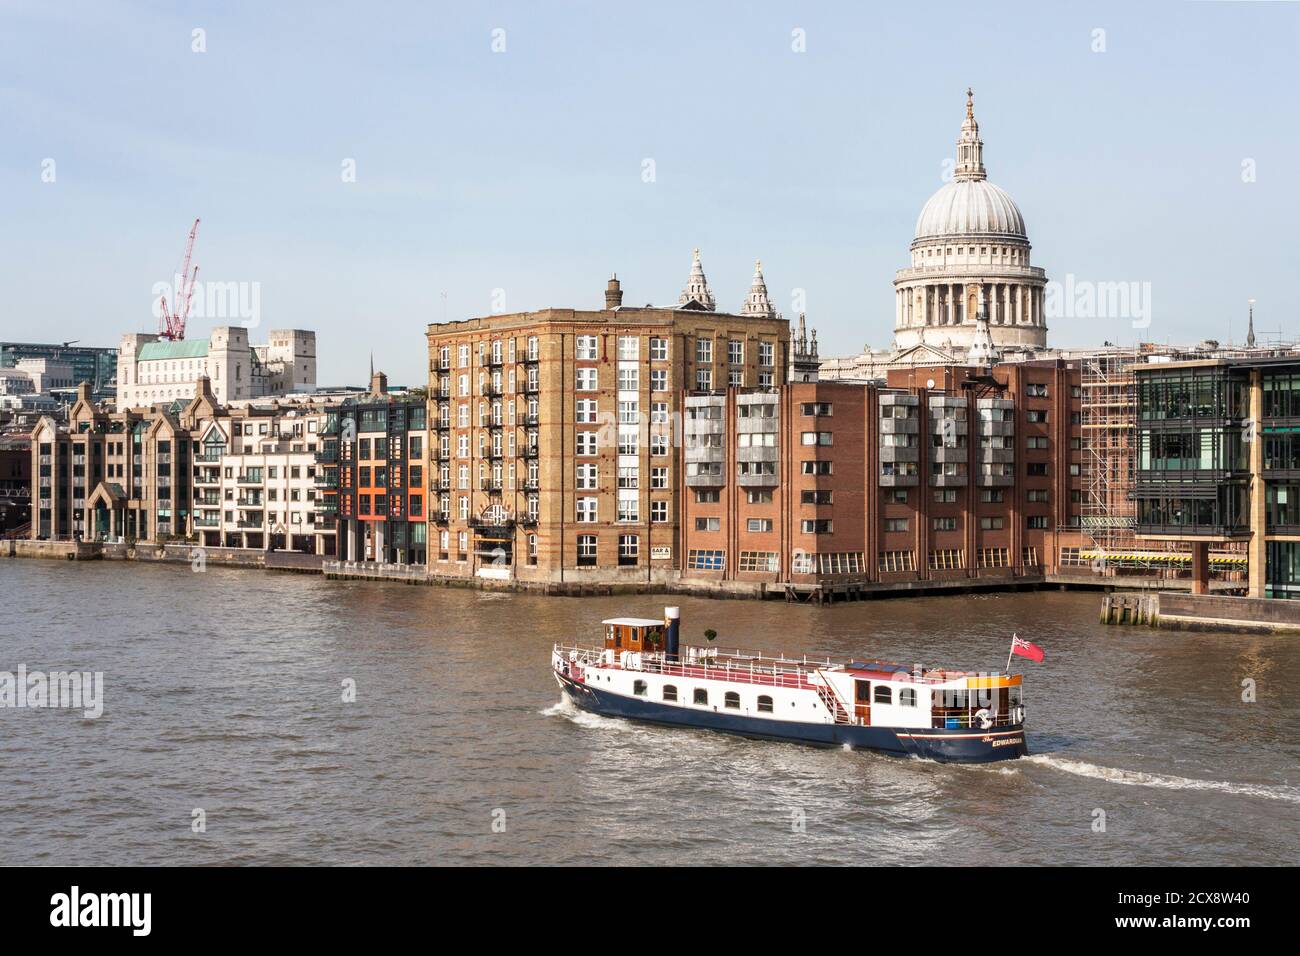 Le bateau sur la Tamise passe devant la cathédrale St Pauls, Londres, Angleterre, GB, Royaume-Uni Banque D'Images